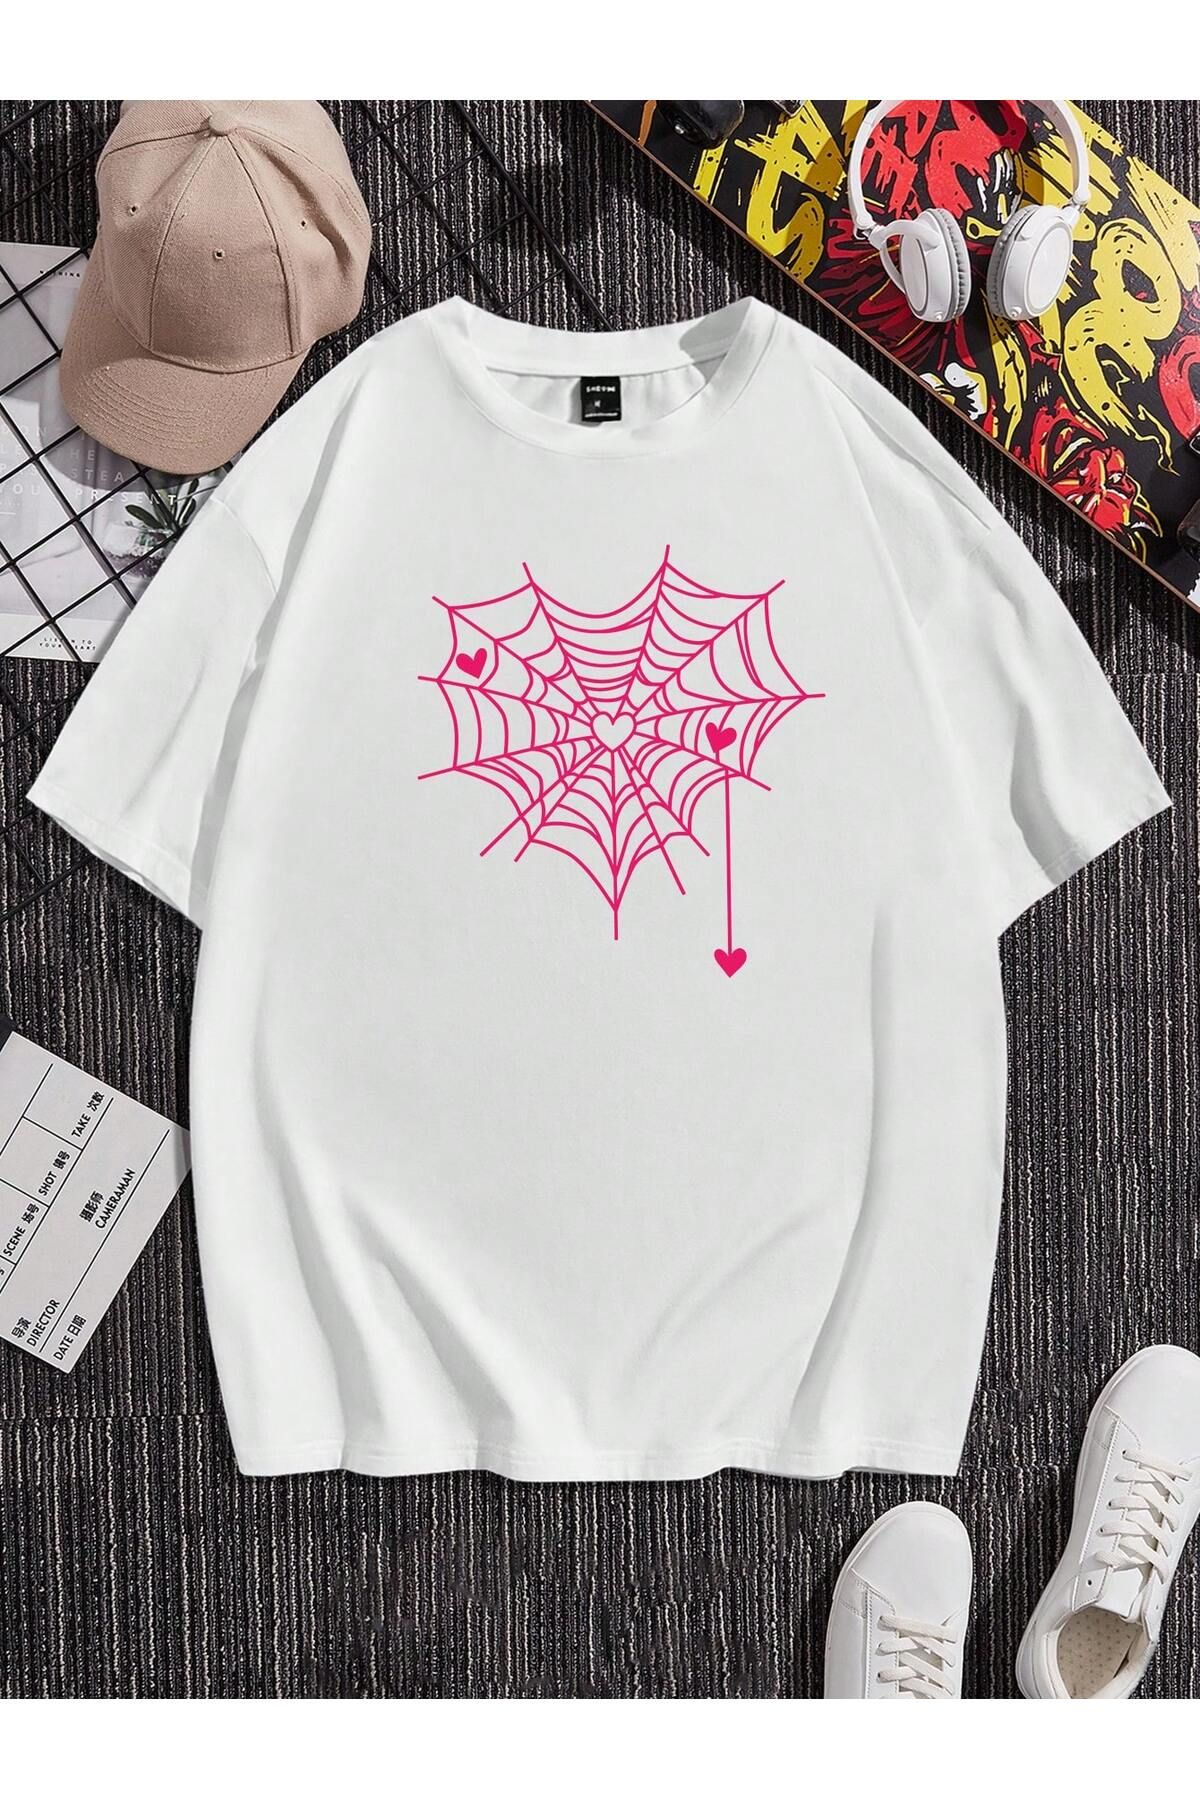 Jose Clothing Unisex Beyaz Örümcek Ağı Baskılı Organik Pamuk Oversize Kesim Kısa Kollu T-shirt